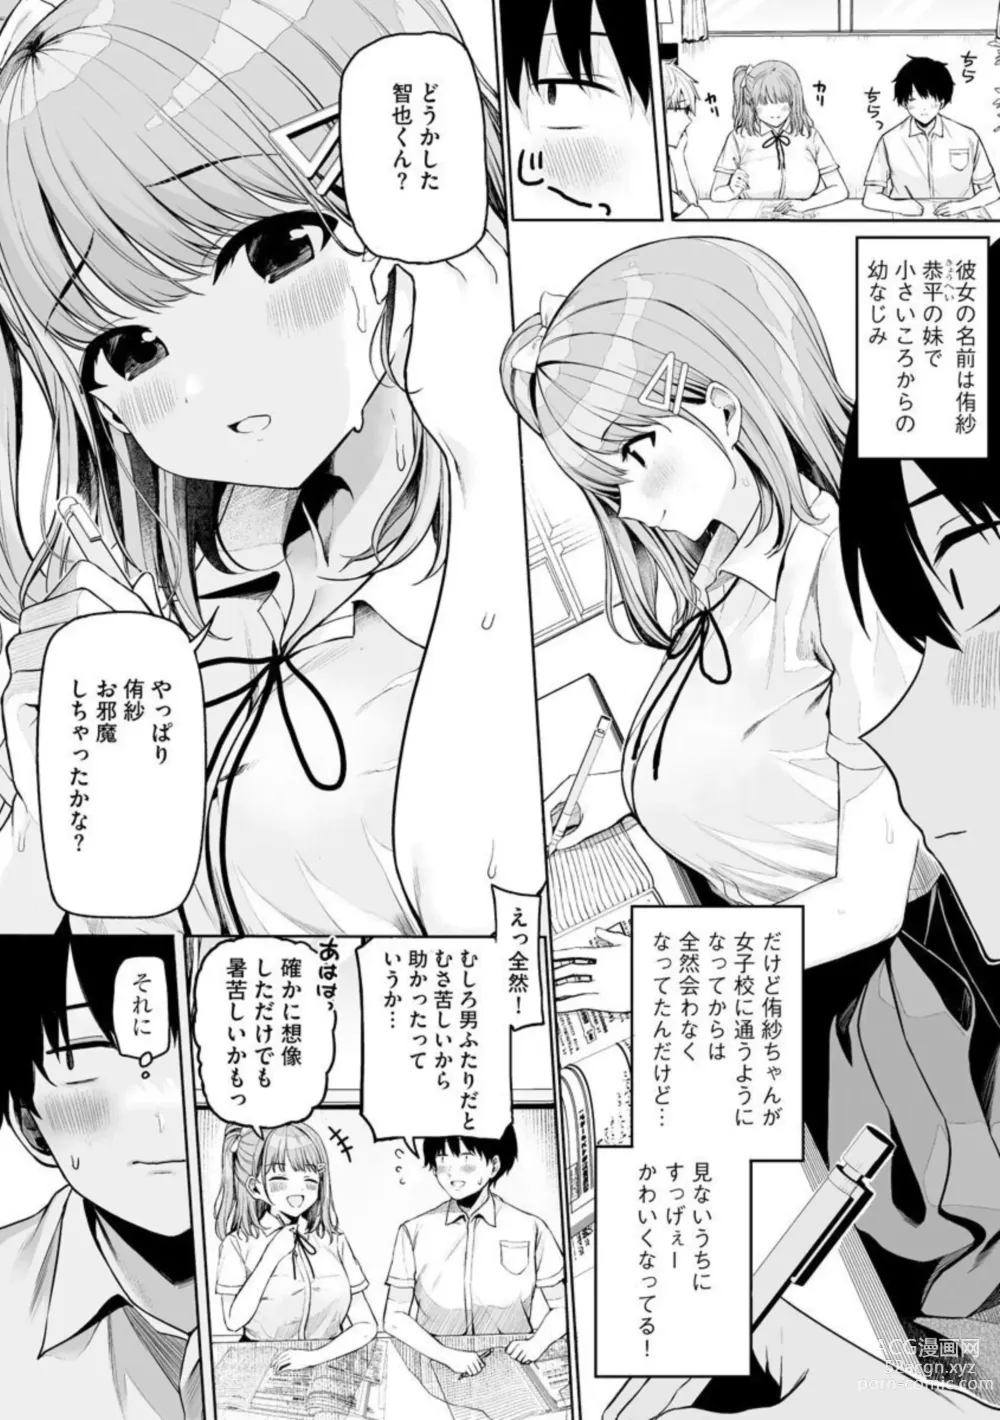 Page 4 of manga Naisho Goto 1